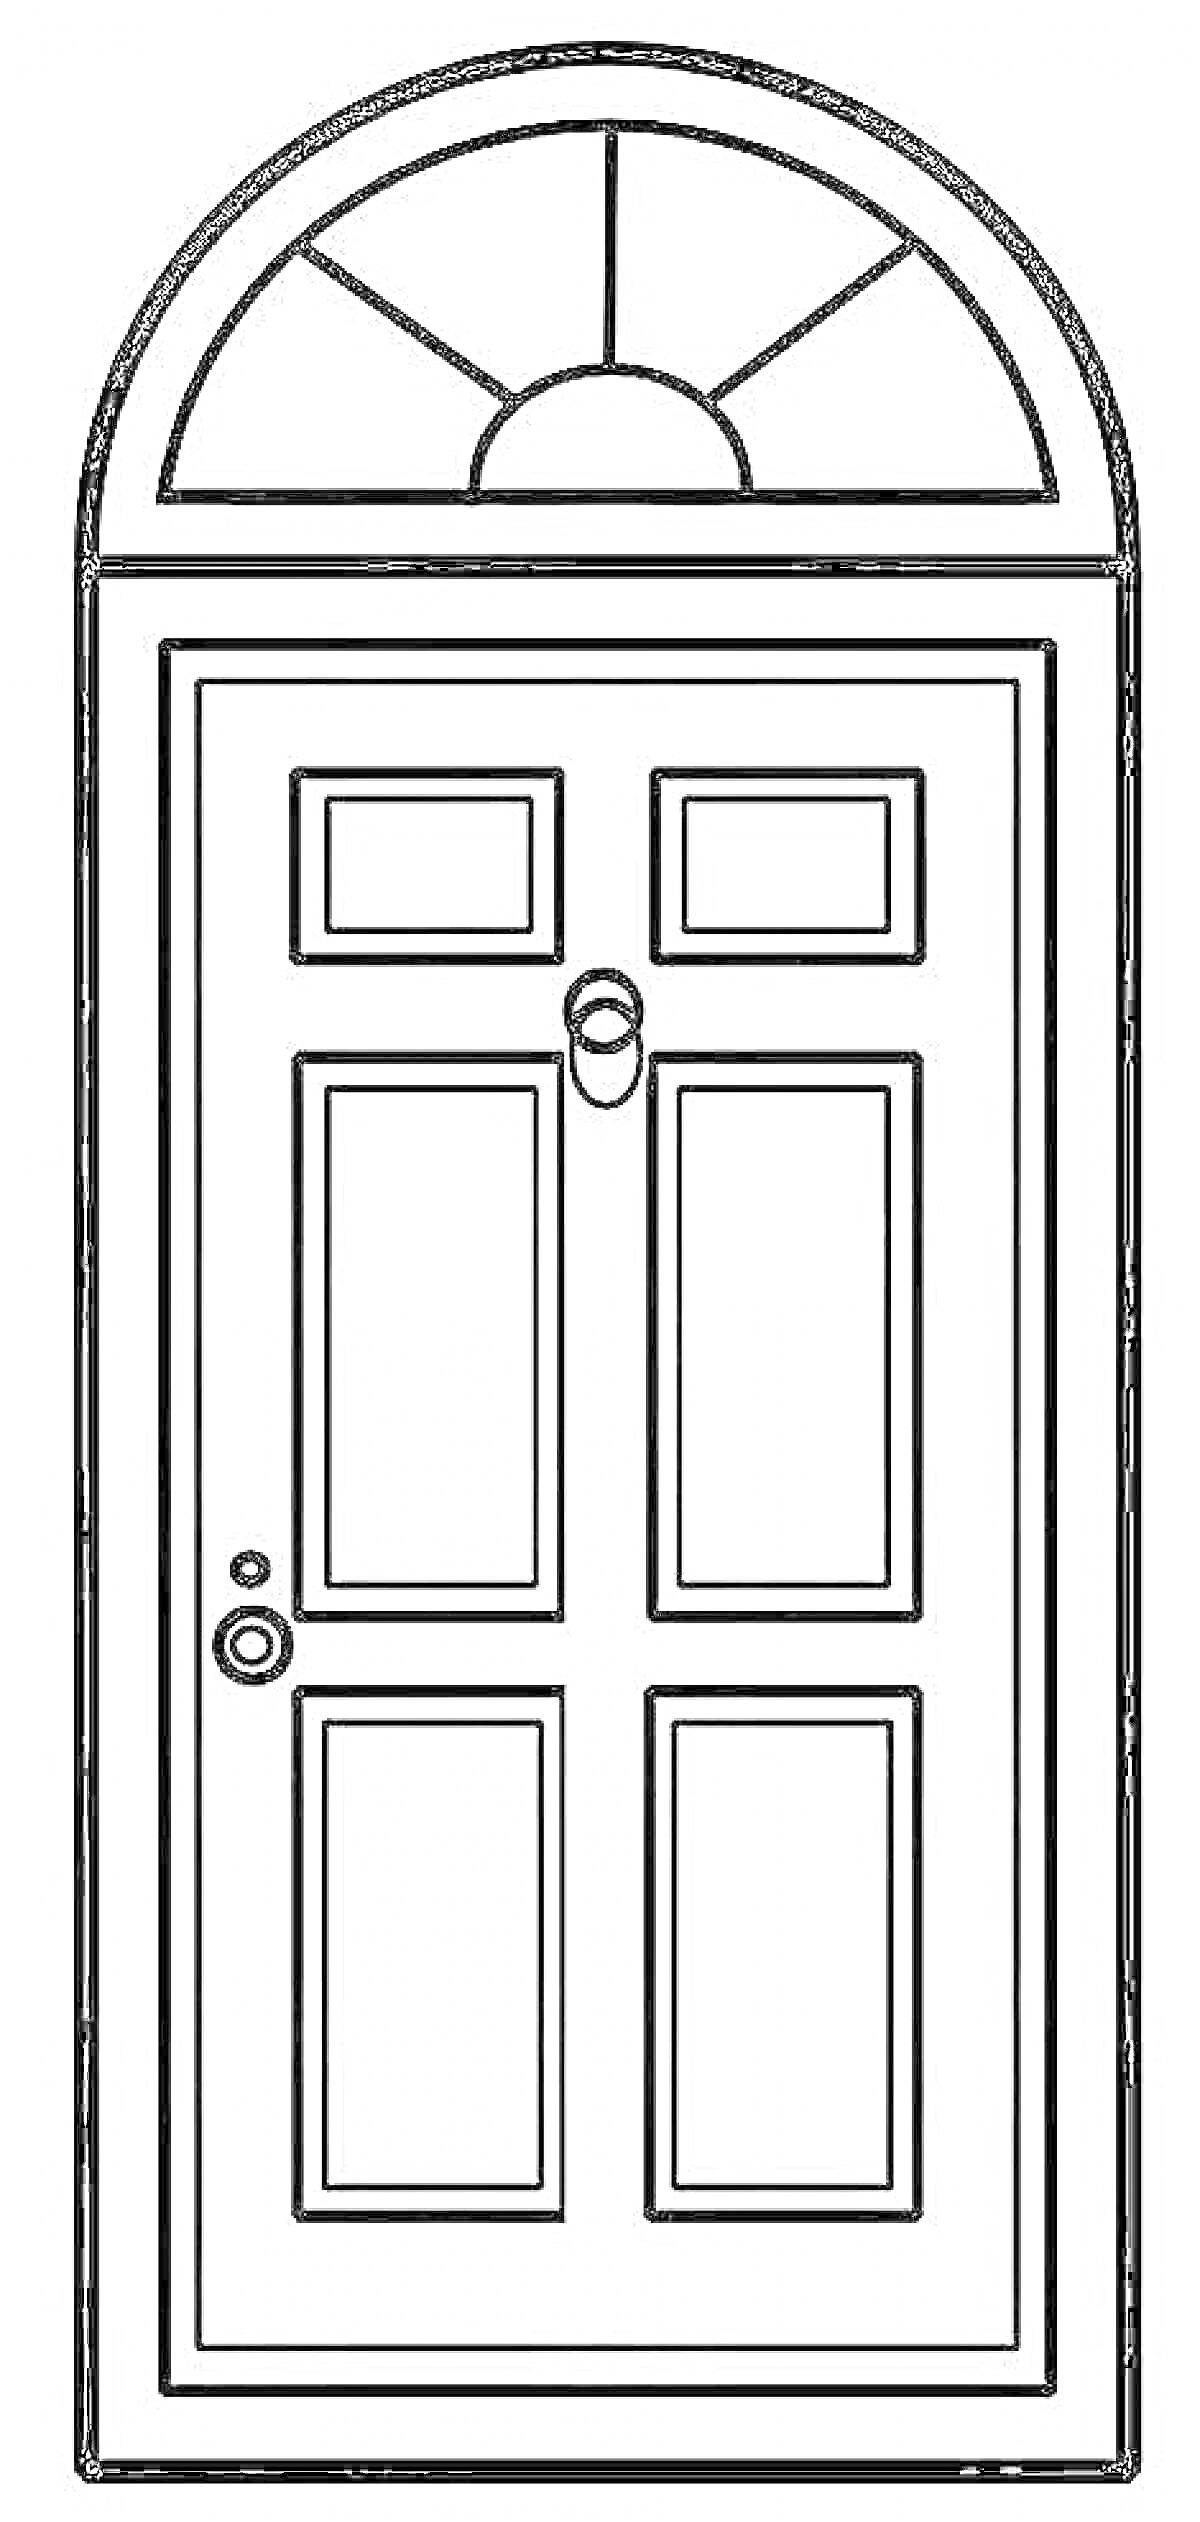 Дверь с шестью панелями и верхним арочным окном, дверной ручкой и дверным молотком